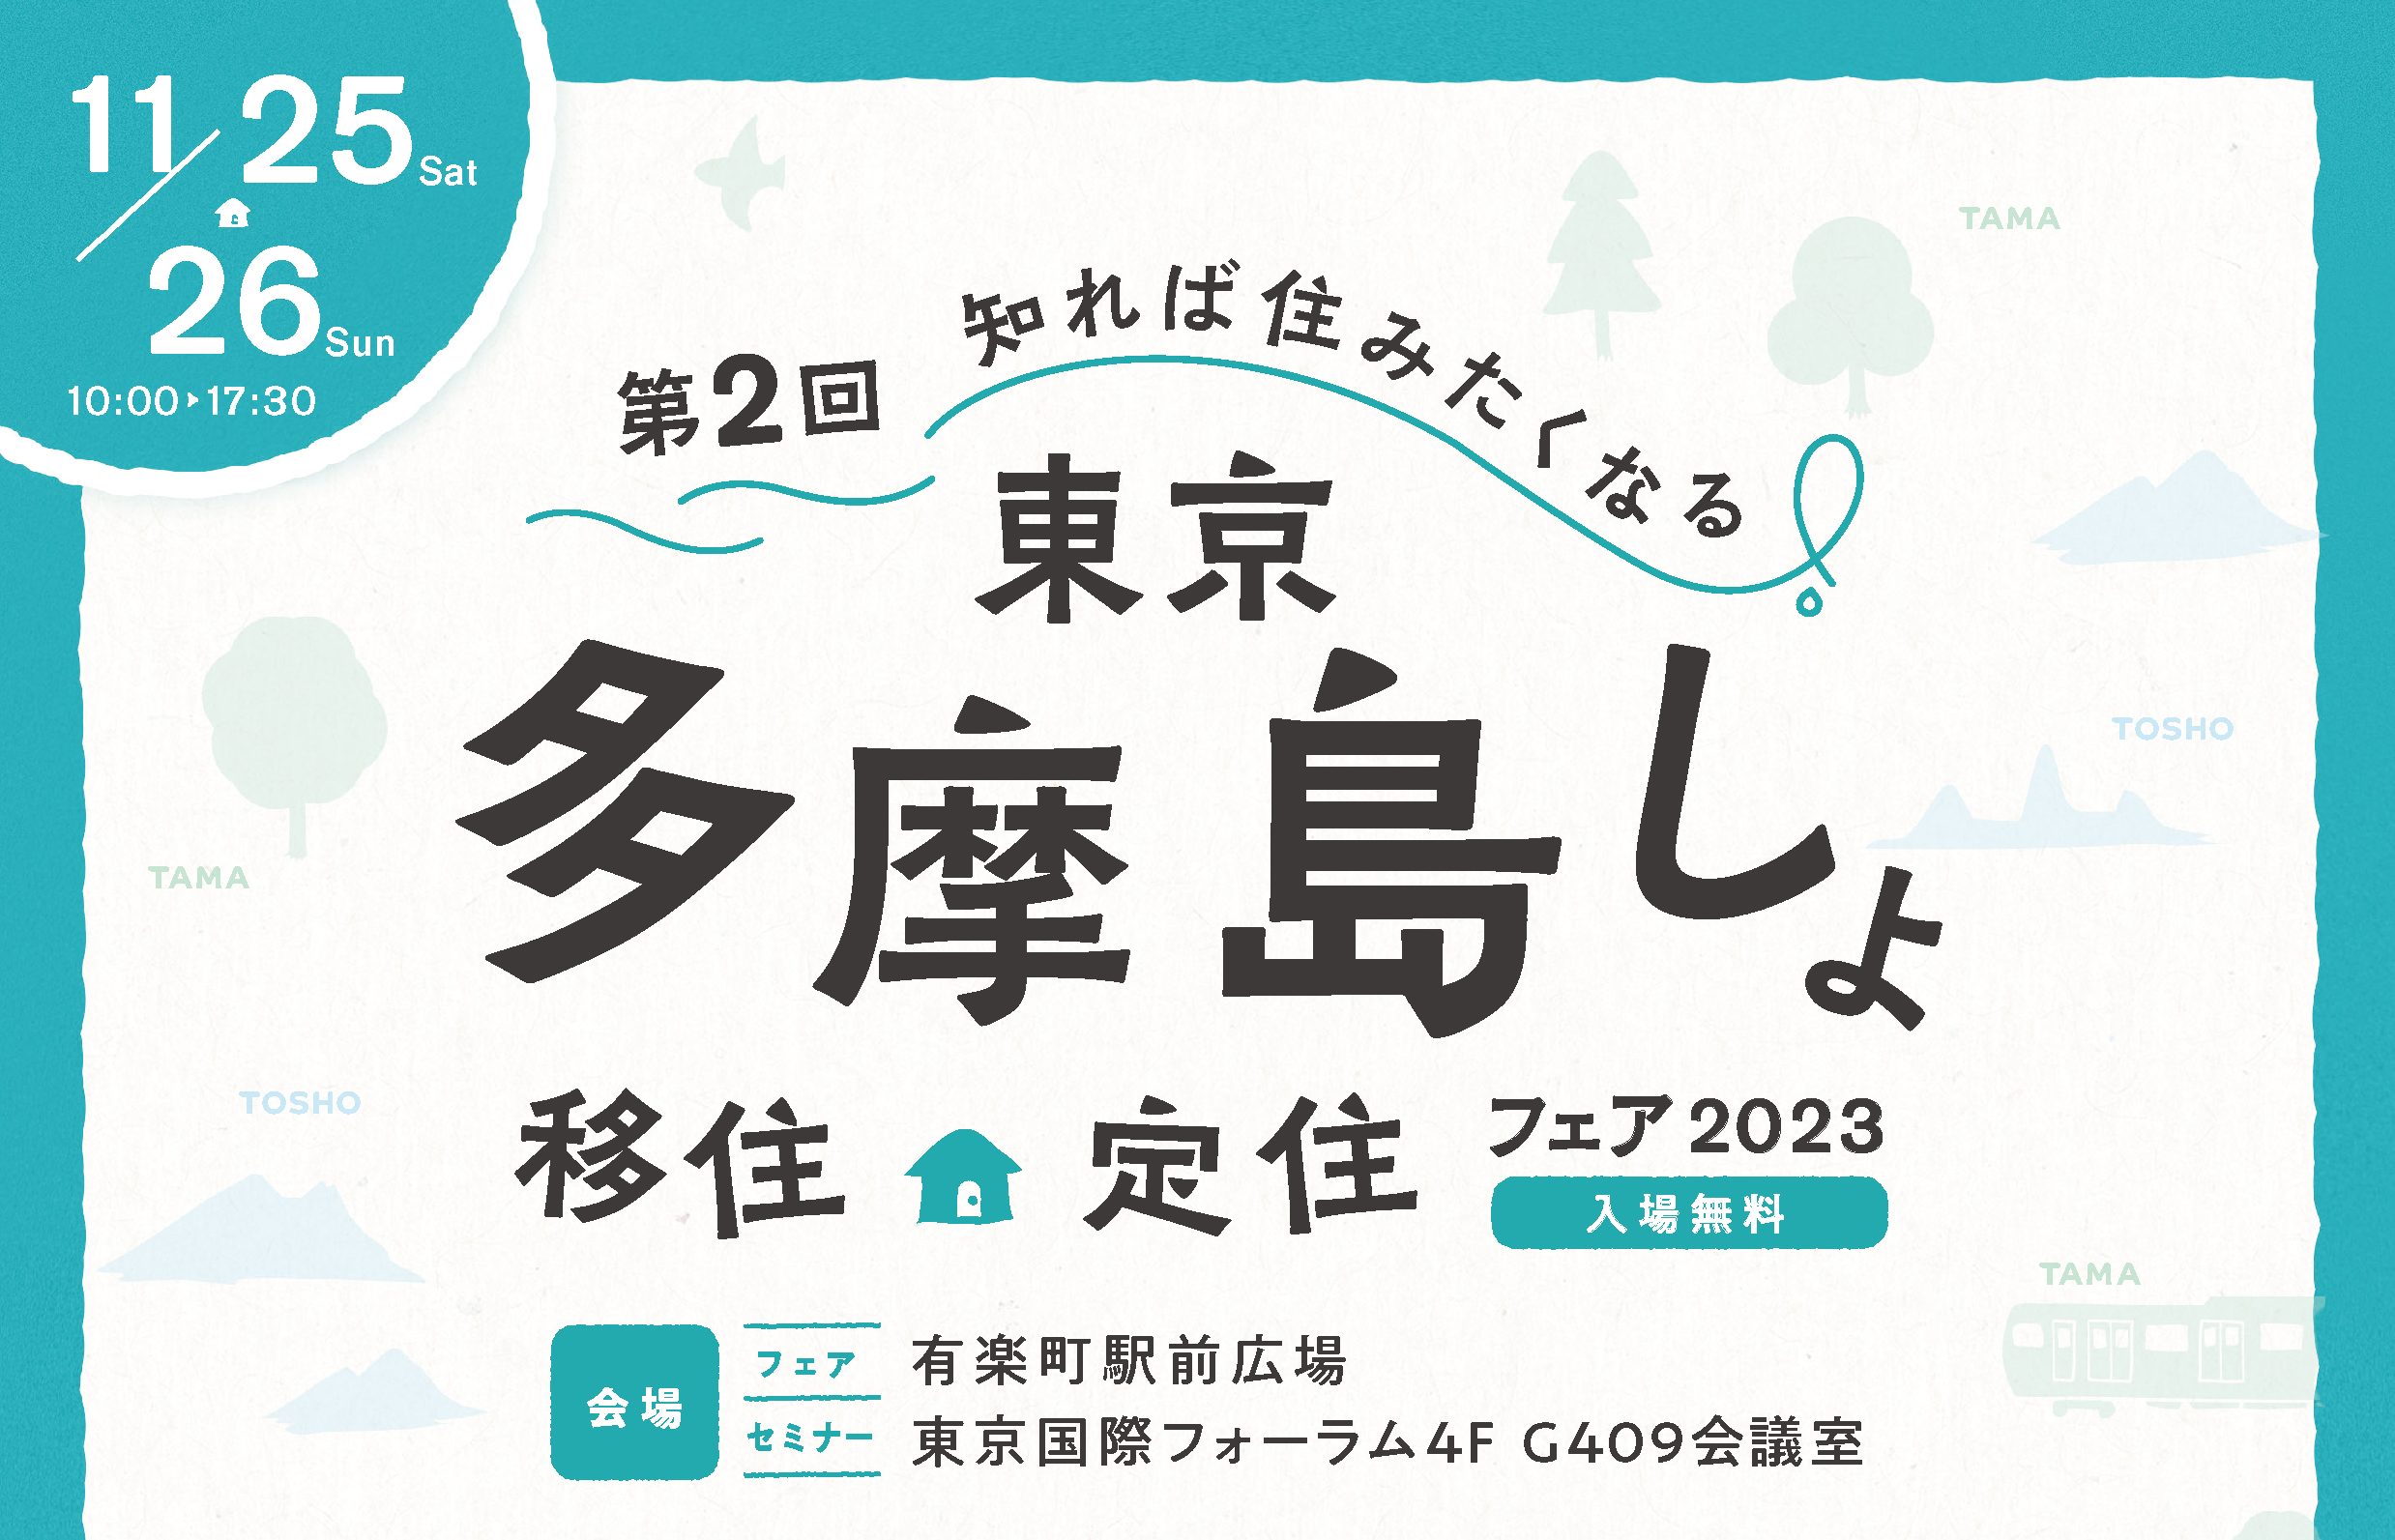 【東京多摩島しょ移住定住フェア2023】「移住定住・関係人口セミナー」に、けやき出版代表・小崎が登壇いたします！